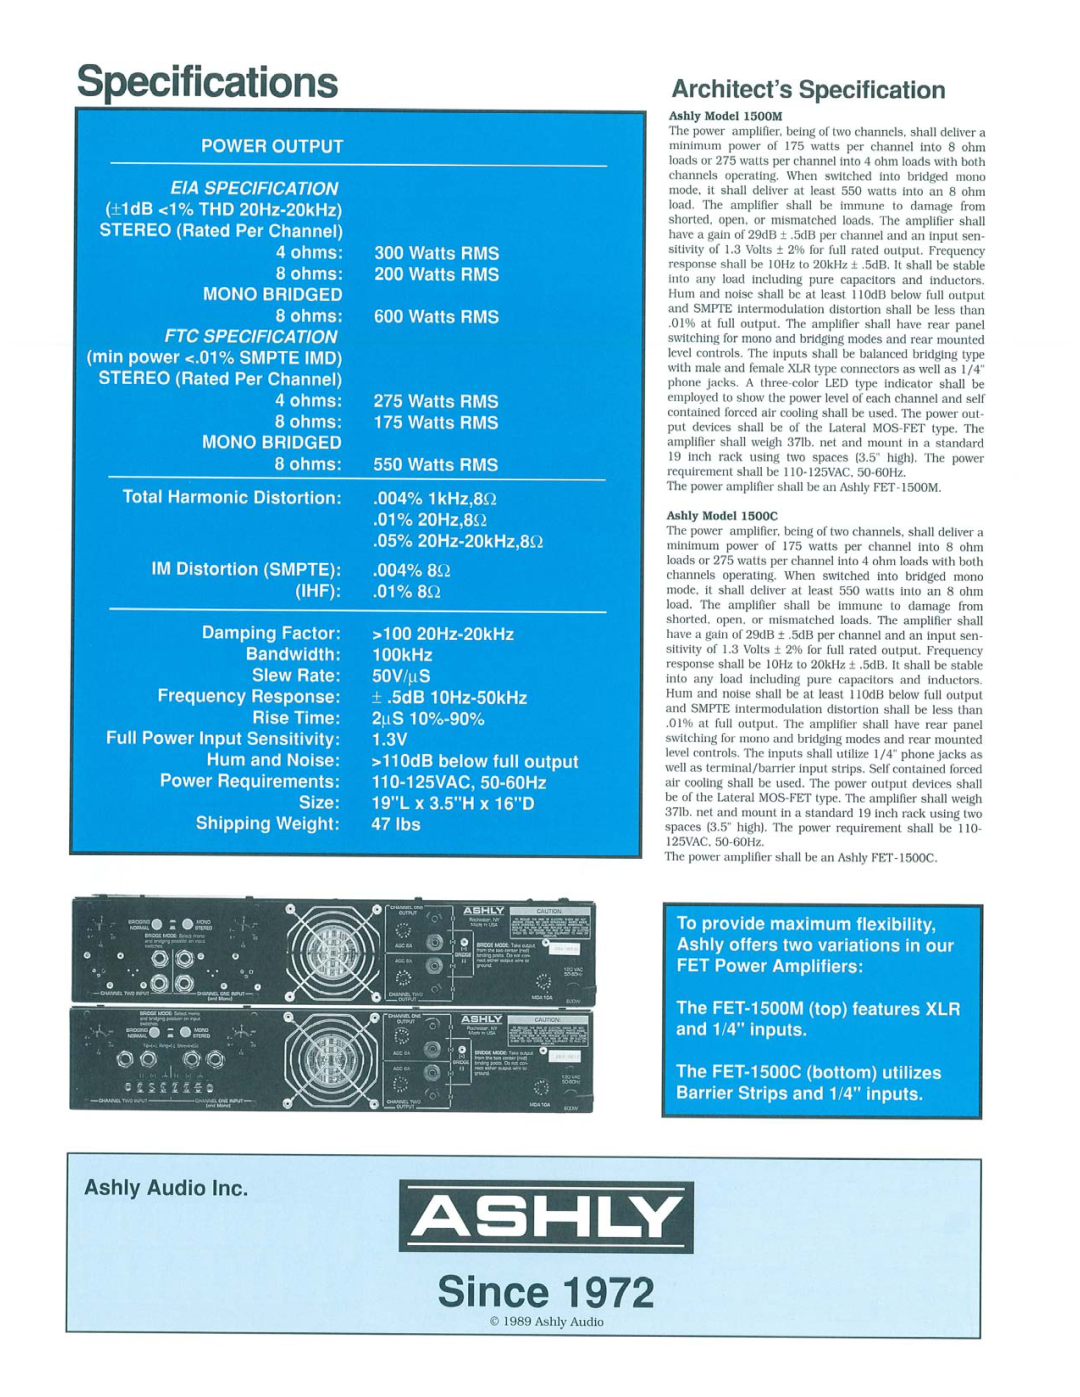 Ashly FET-1500M, FET-1500C manual 